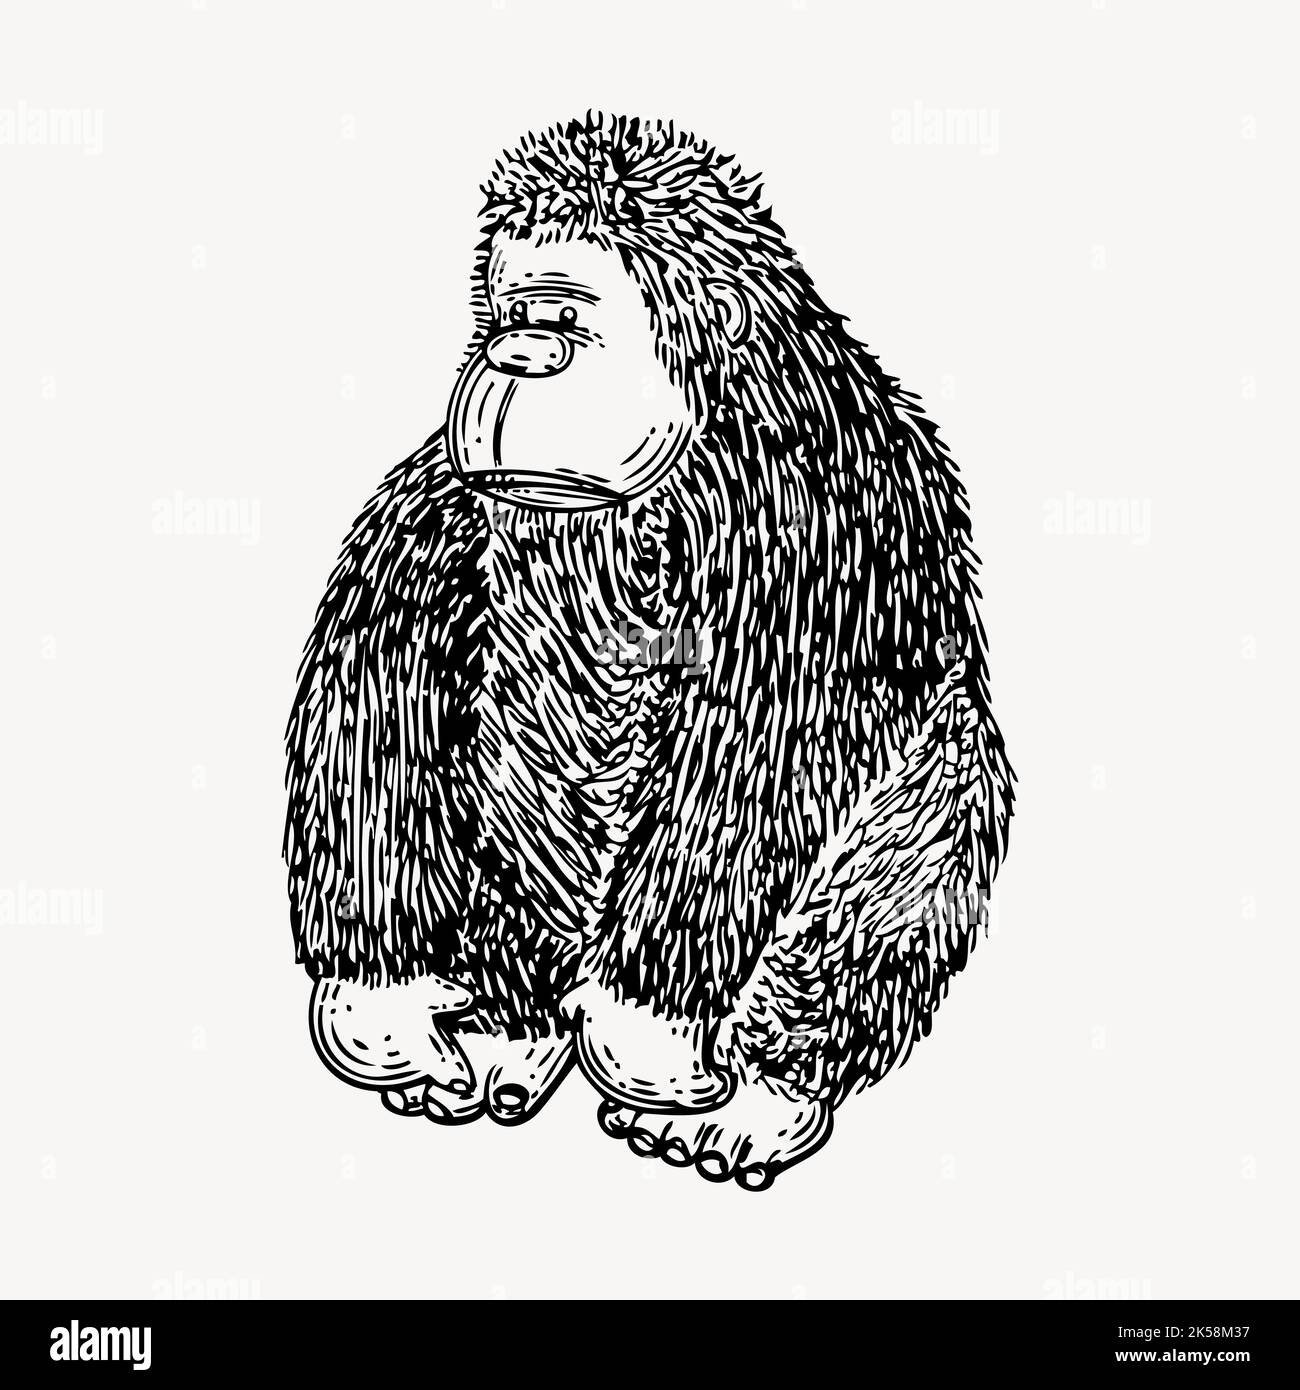 Dessin Gorilla, vecteur d'illustration animal vintage. Illustration de Vecteur